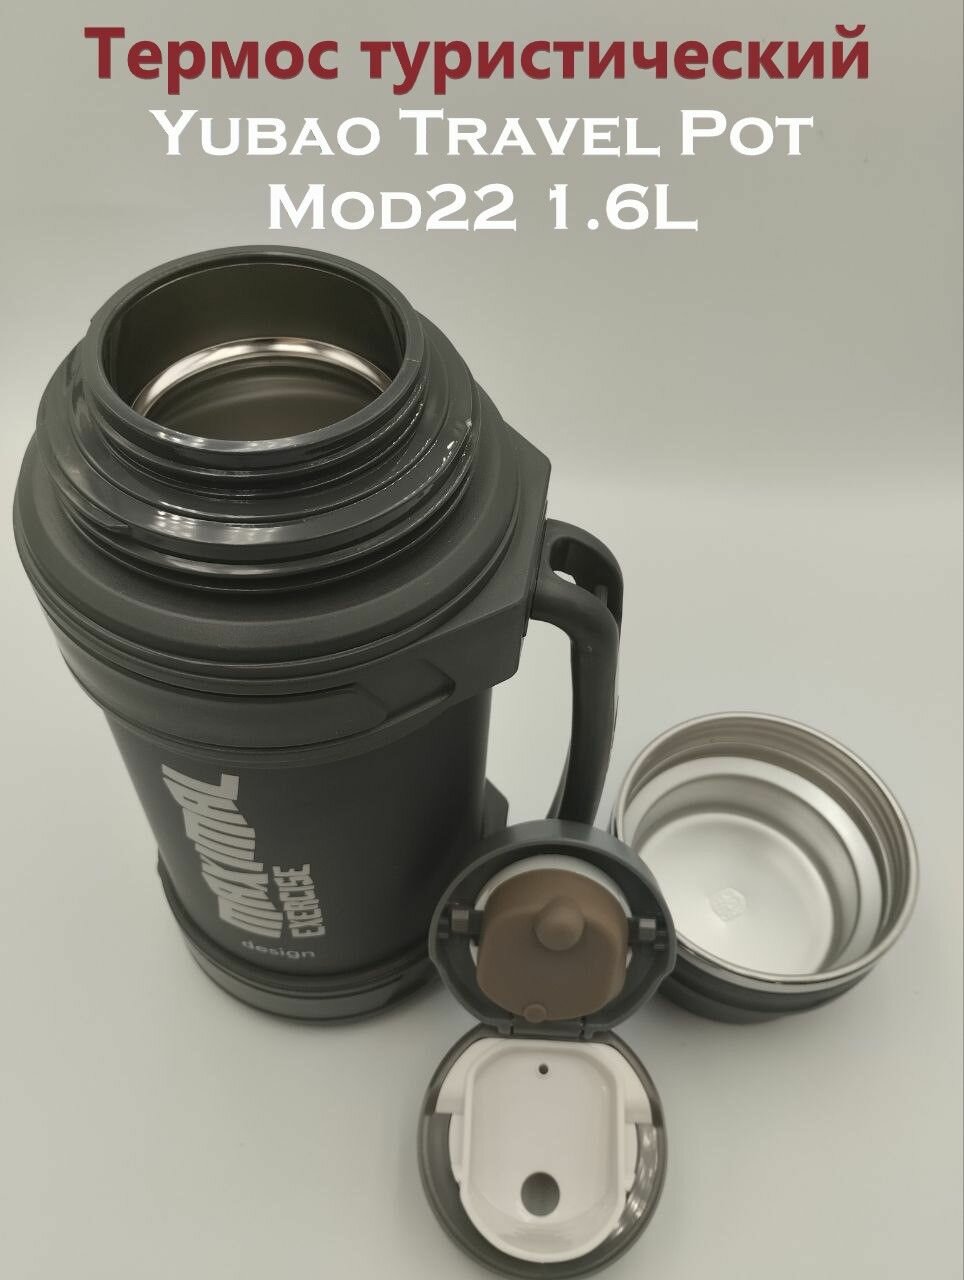 Термос туристический Yubao Travel Pot Mod22 1.6L